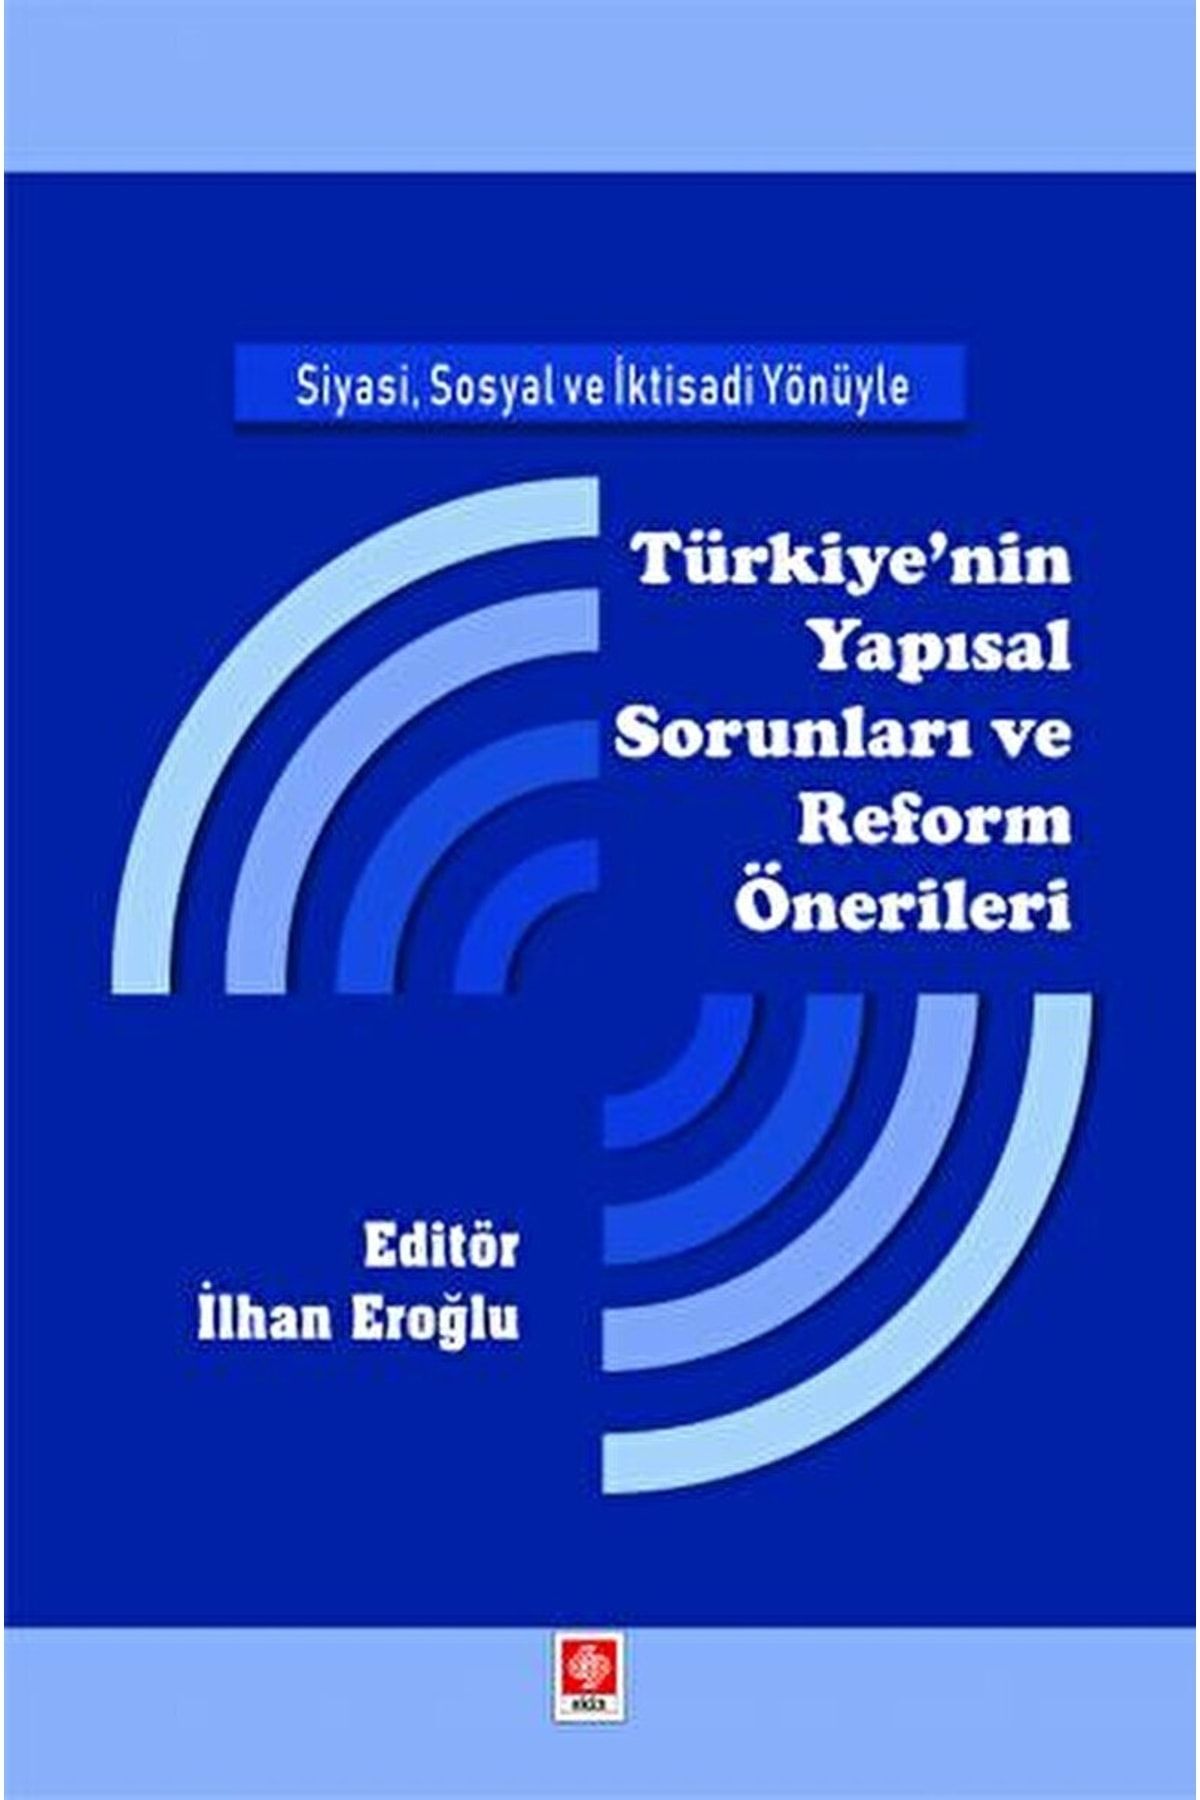 Ekin Basım Yayın Siyasi, Sosyal Ve Iktisadi Yönüyle Türkiye'nin Yapısal Sorunları Ve Reform Önerileri / 9786258235616